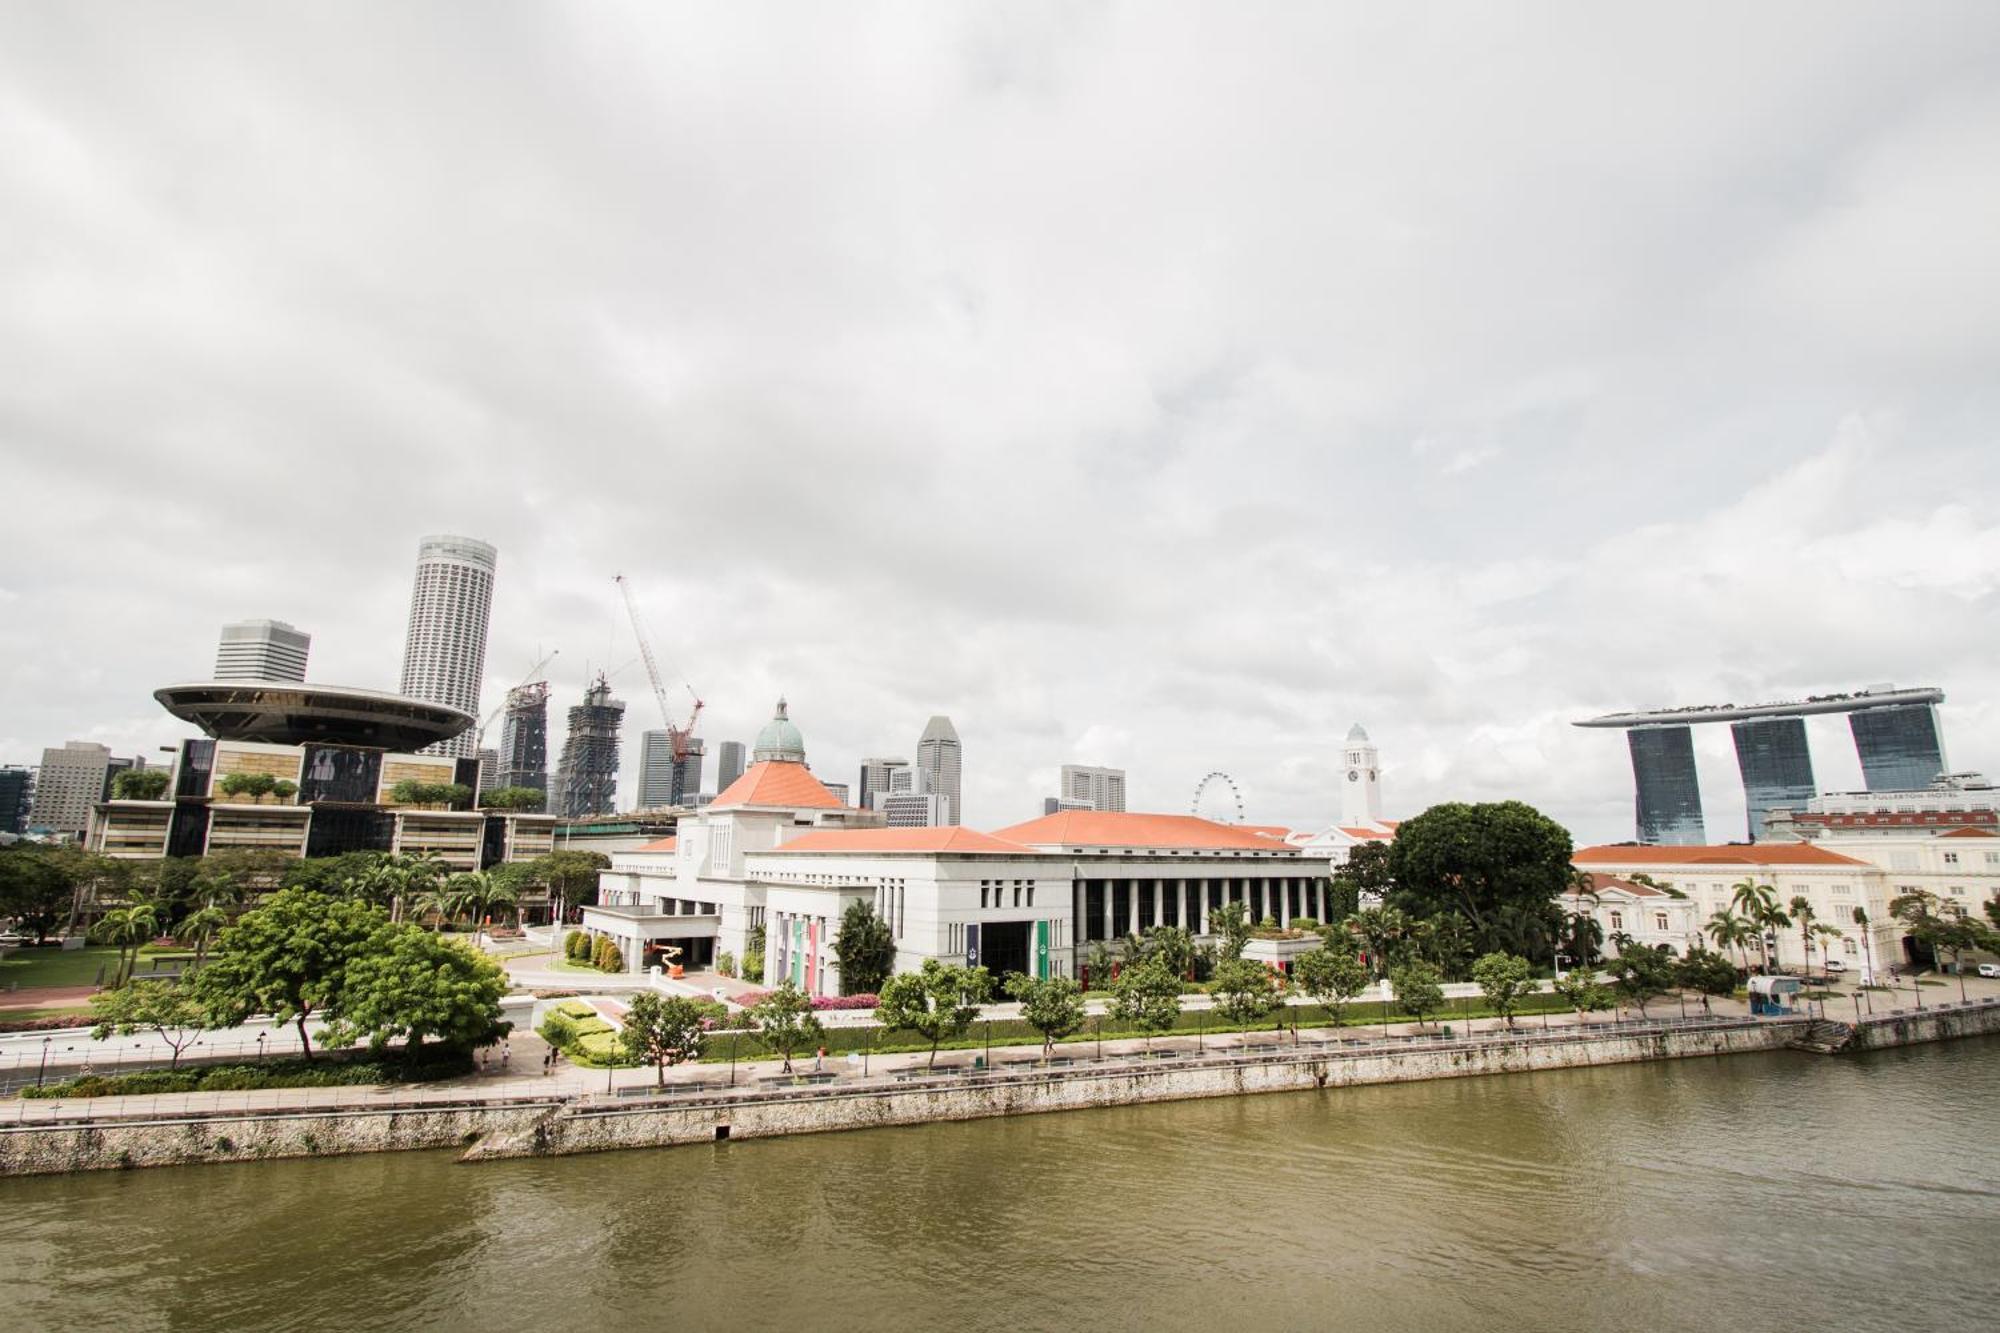 سنغافورة Heritage Collection On Boat Quay - South Bridge Wing المظهر الخارجي الصورة